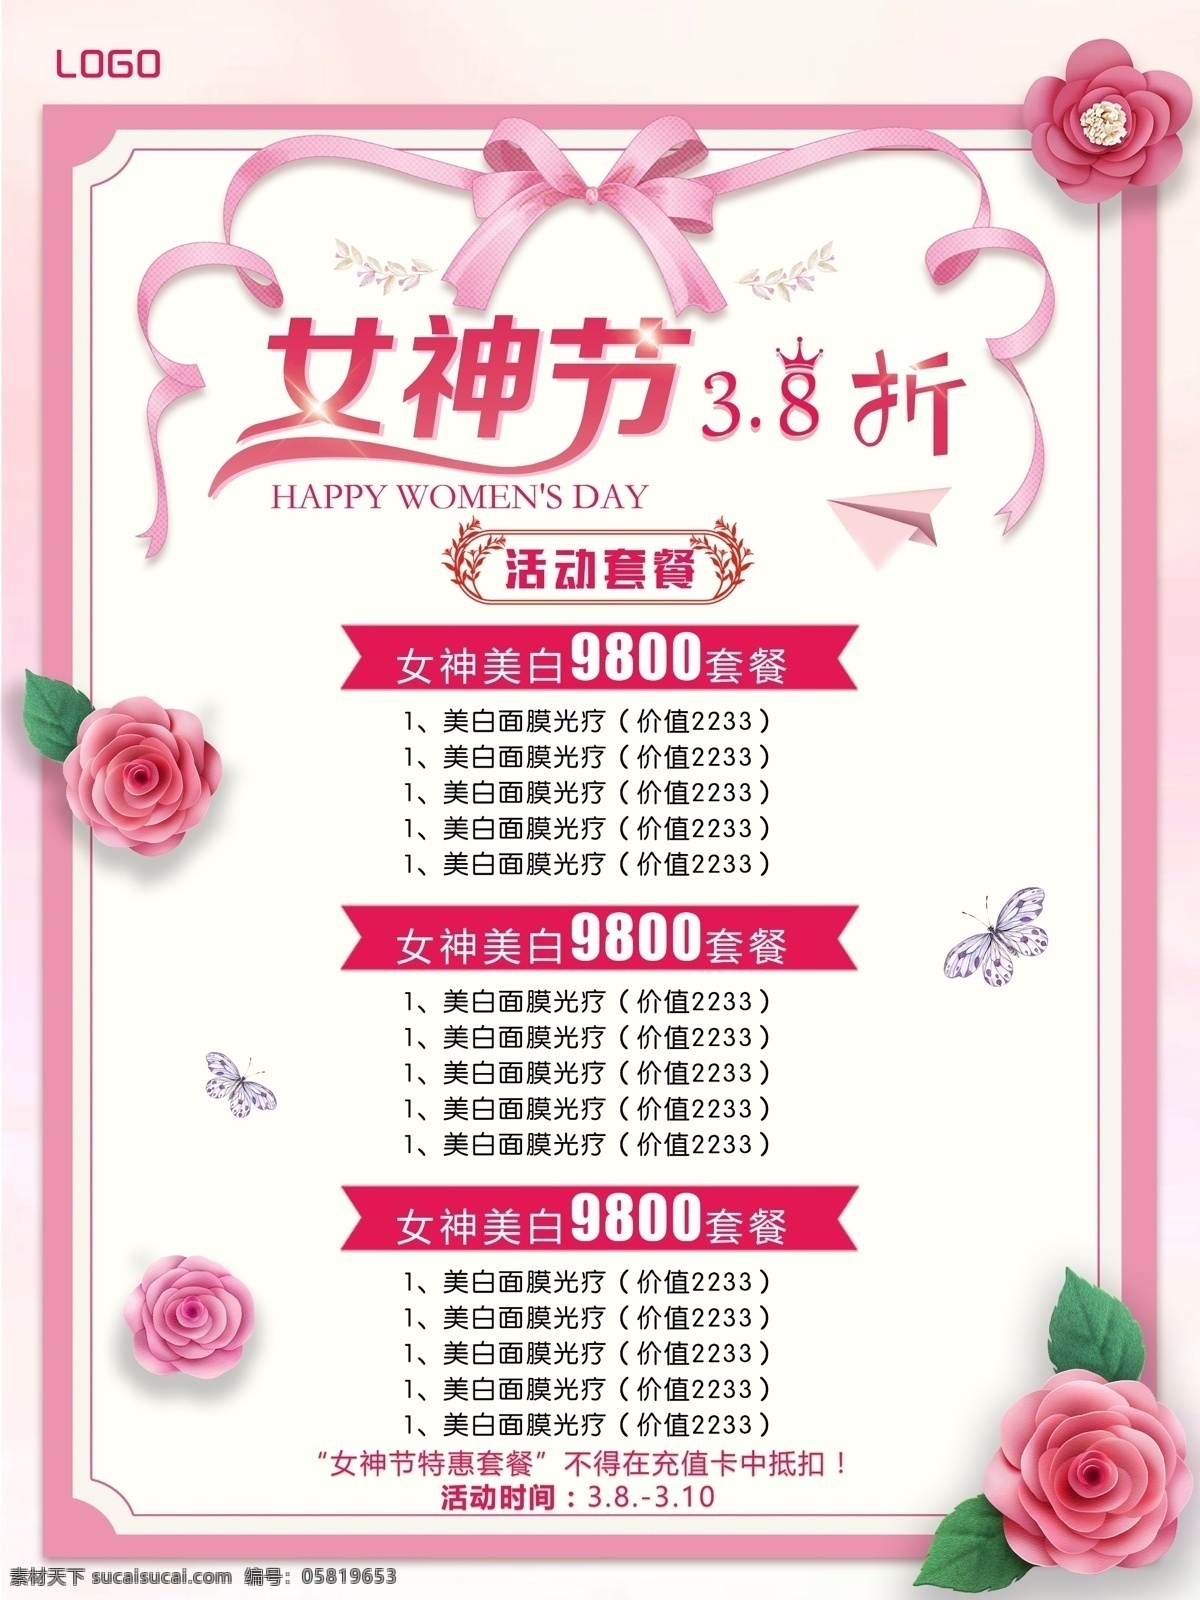 38女神节 女生节 妇女节 女王节 三八节 简洁 大气海报 花卉 蝴蝶结